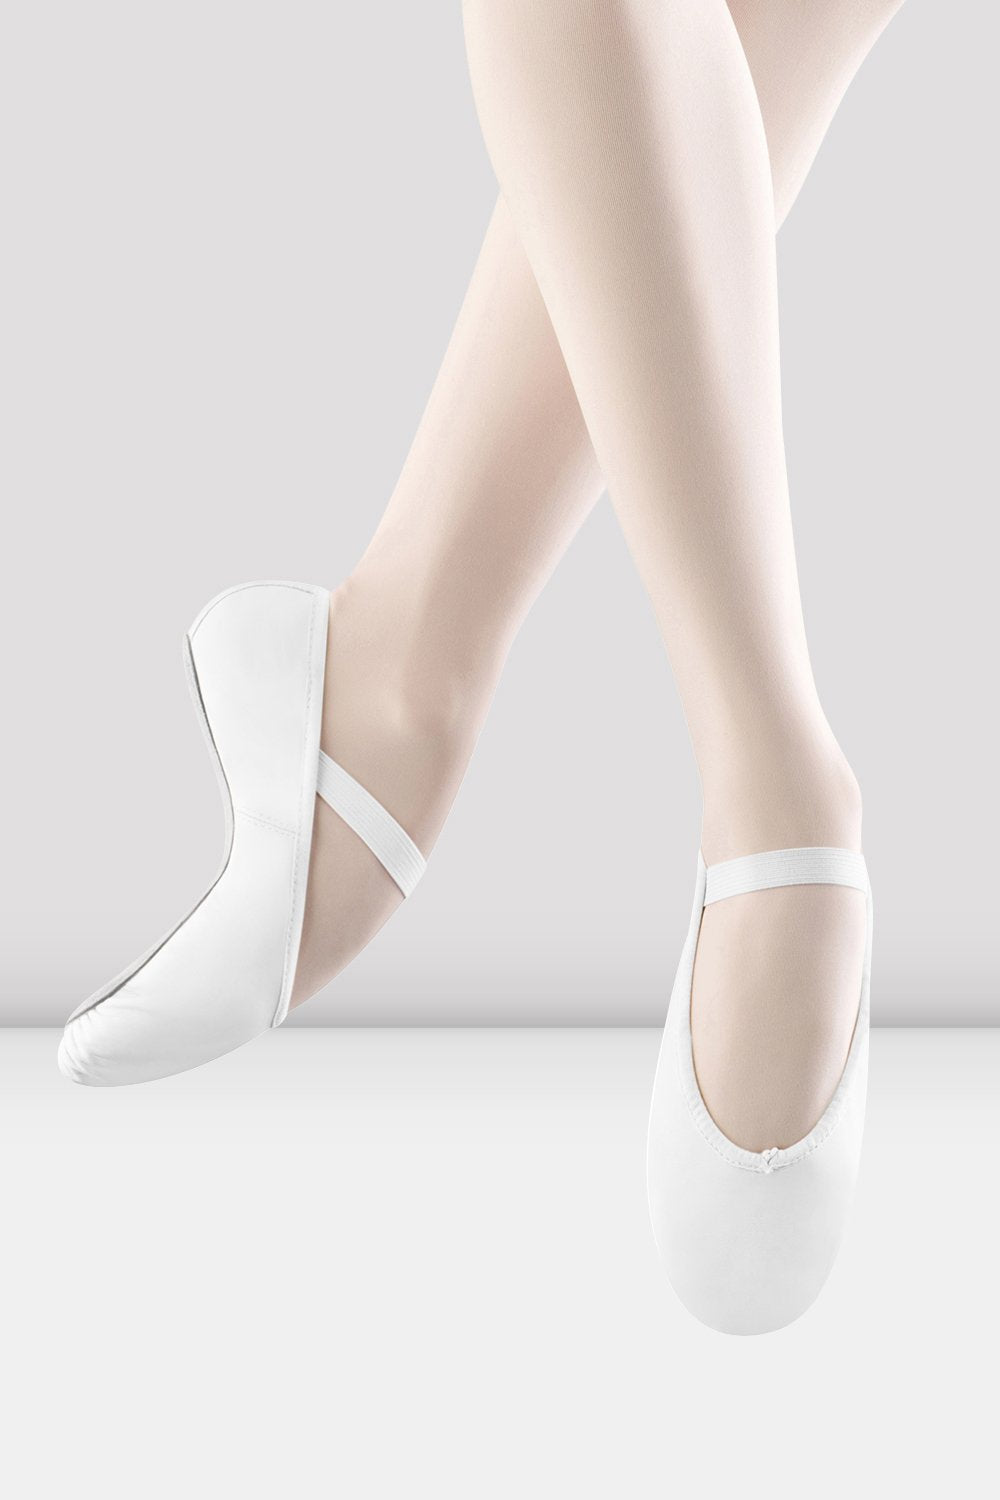 Zapatillas de ballet cuero para niñas, blancas BLOCH UE – BLOCH Dance EU